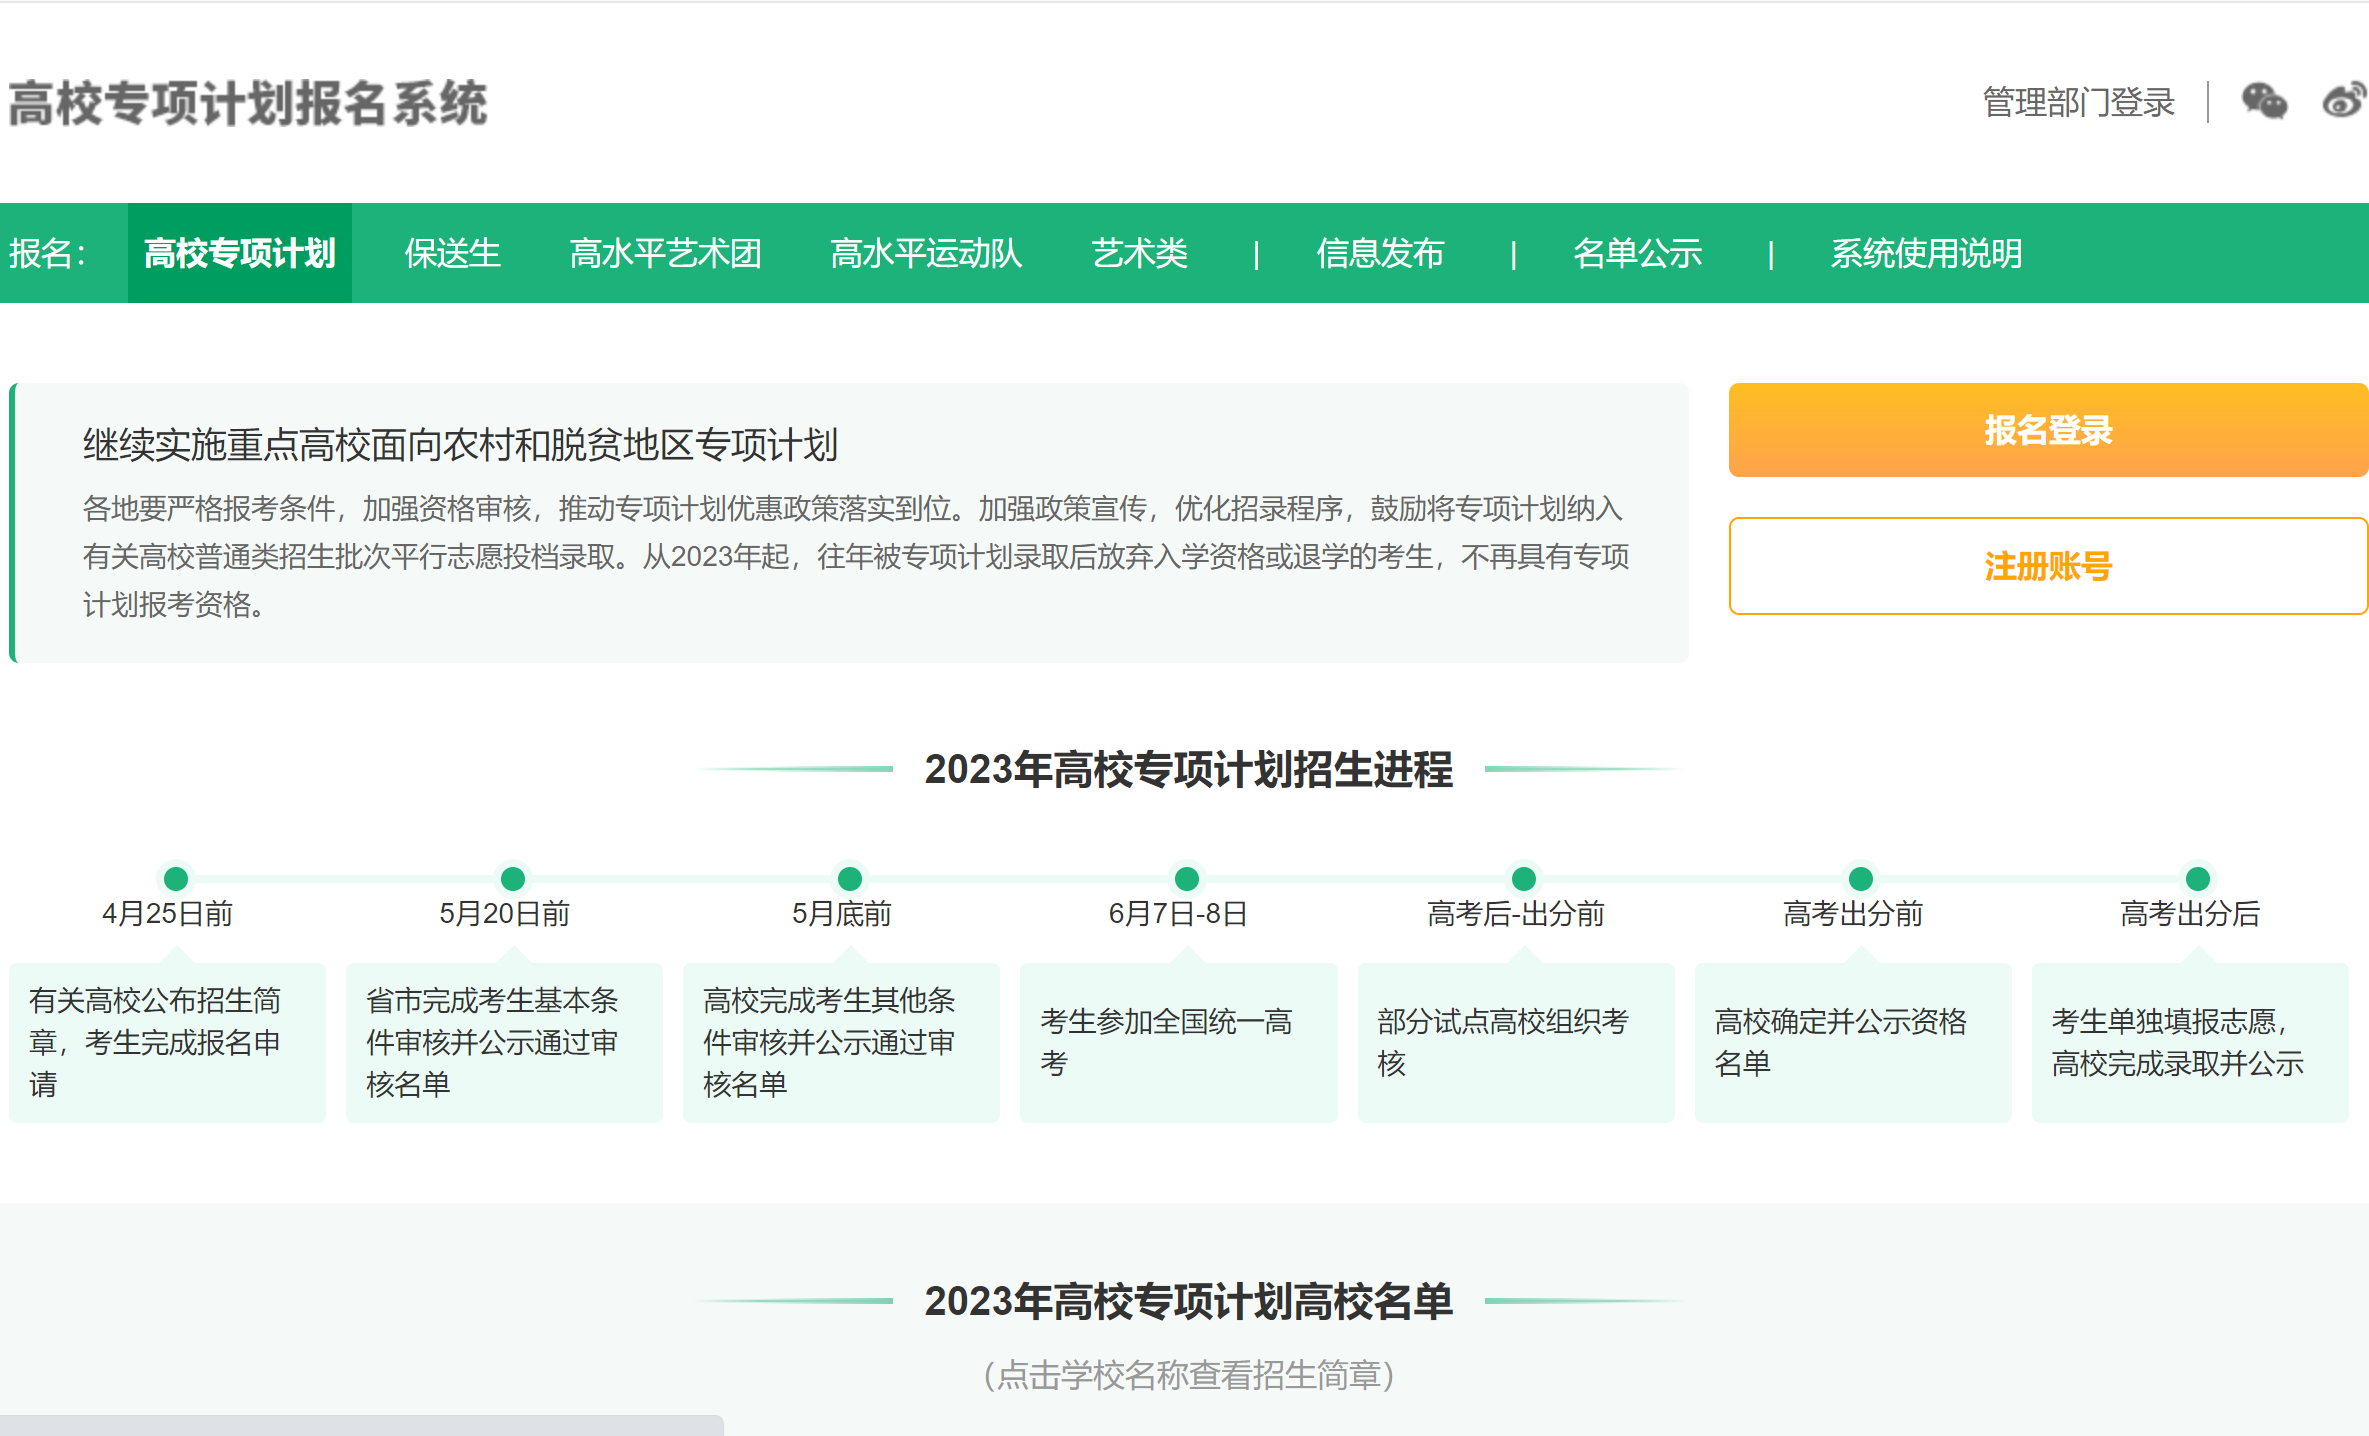 2023北京工业大学高校专项计划报名时间及报名入口